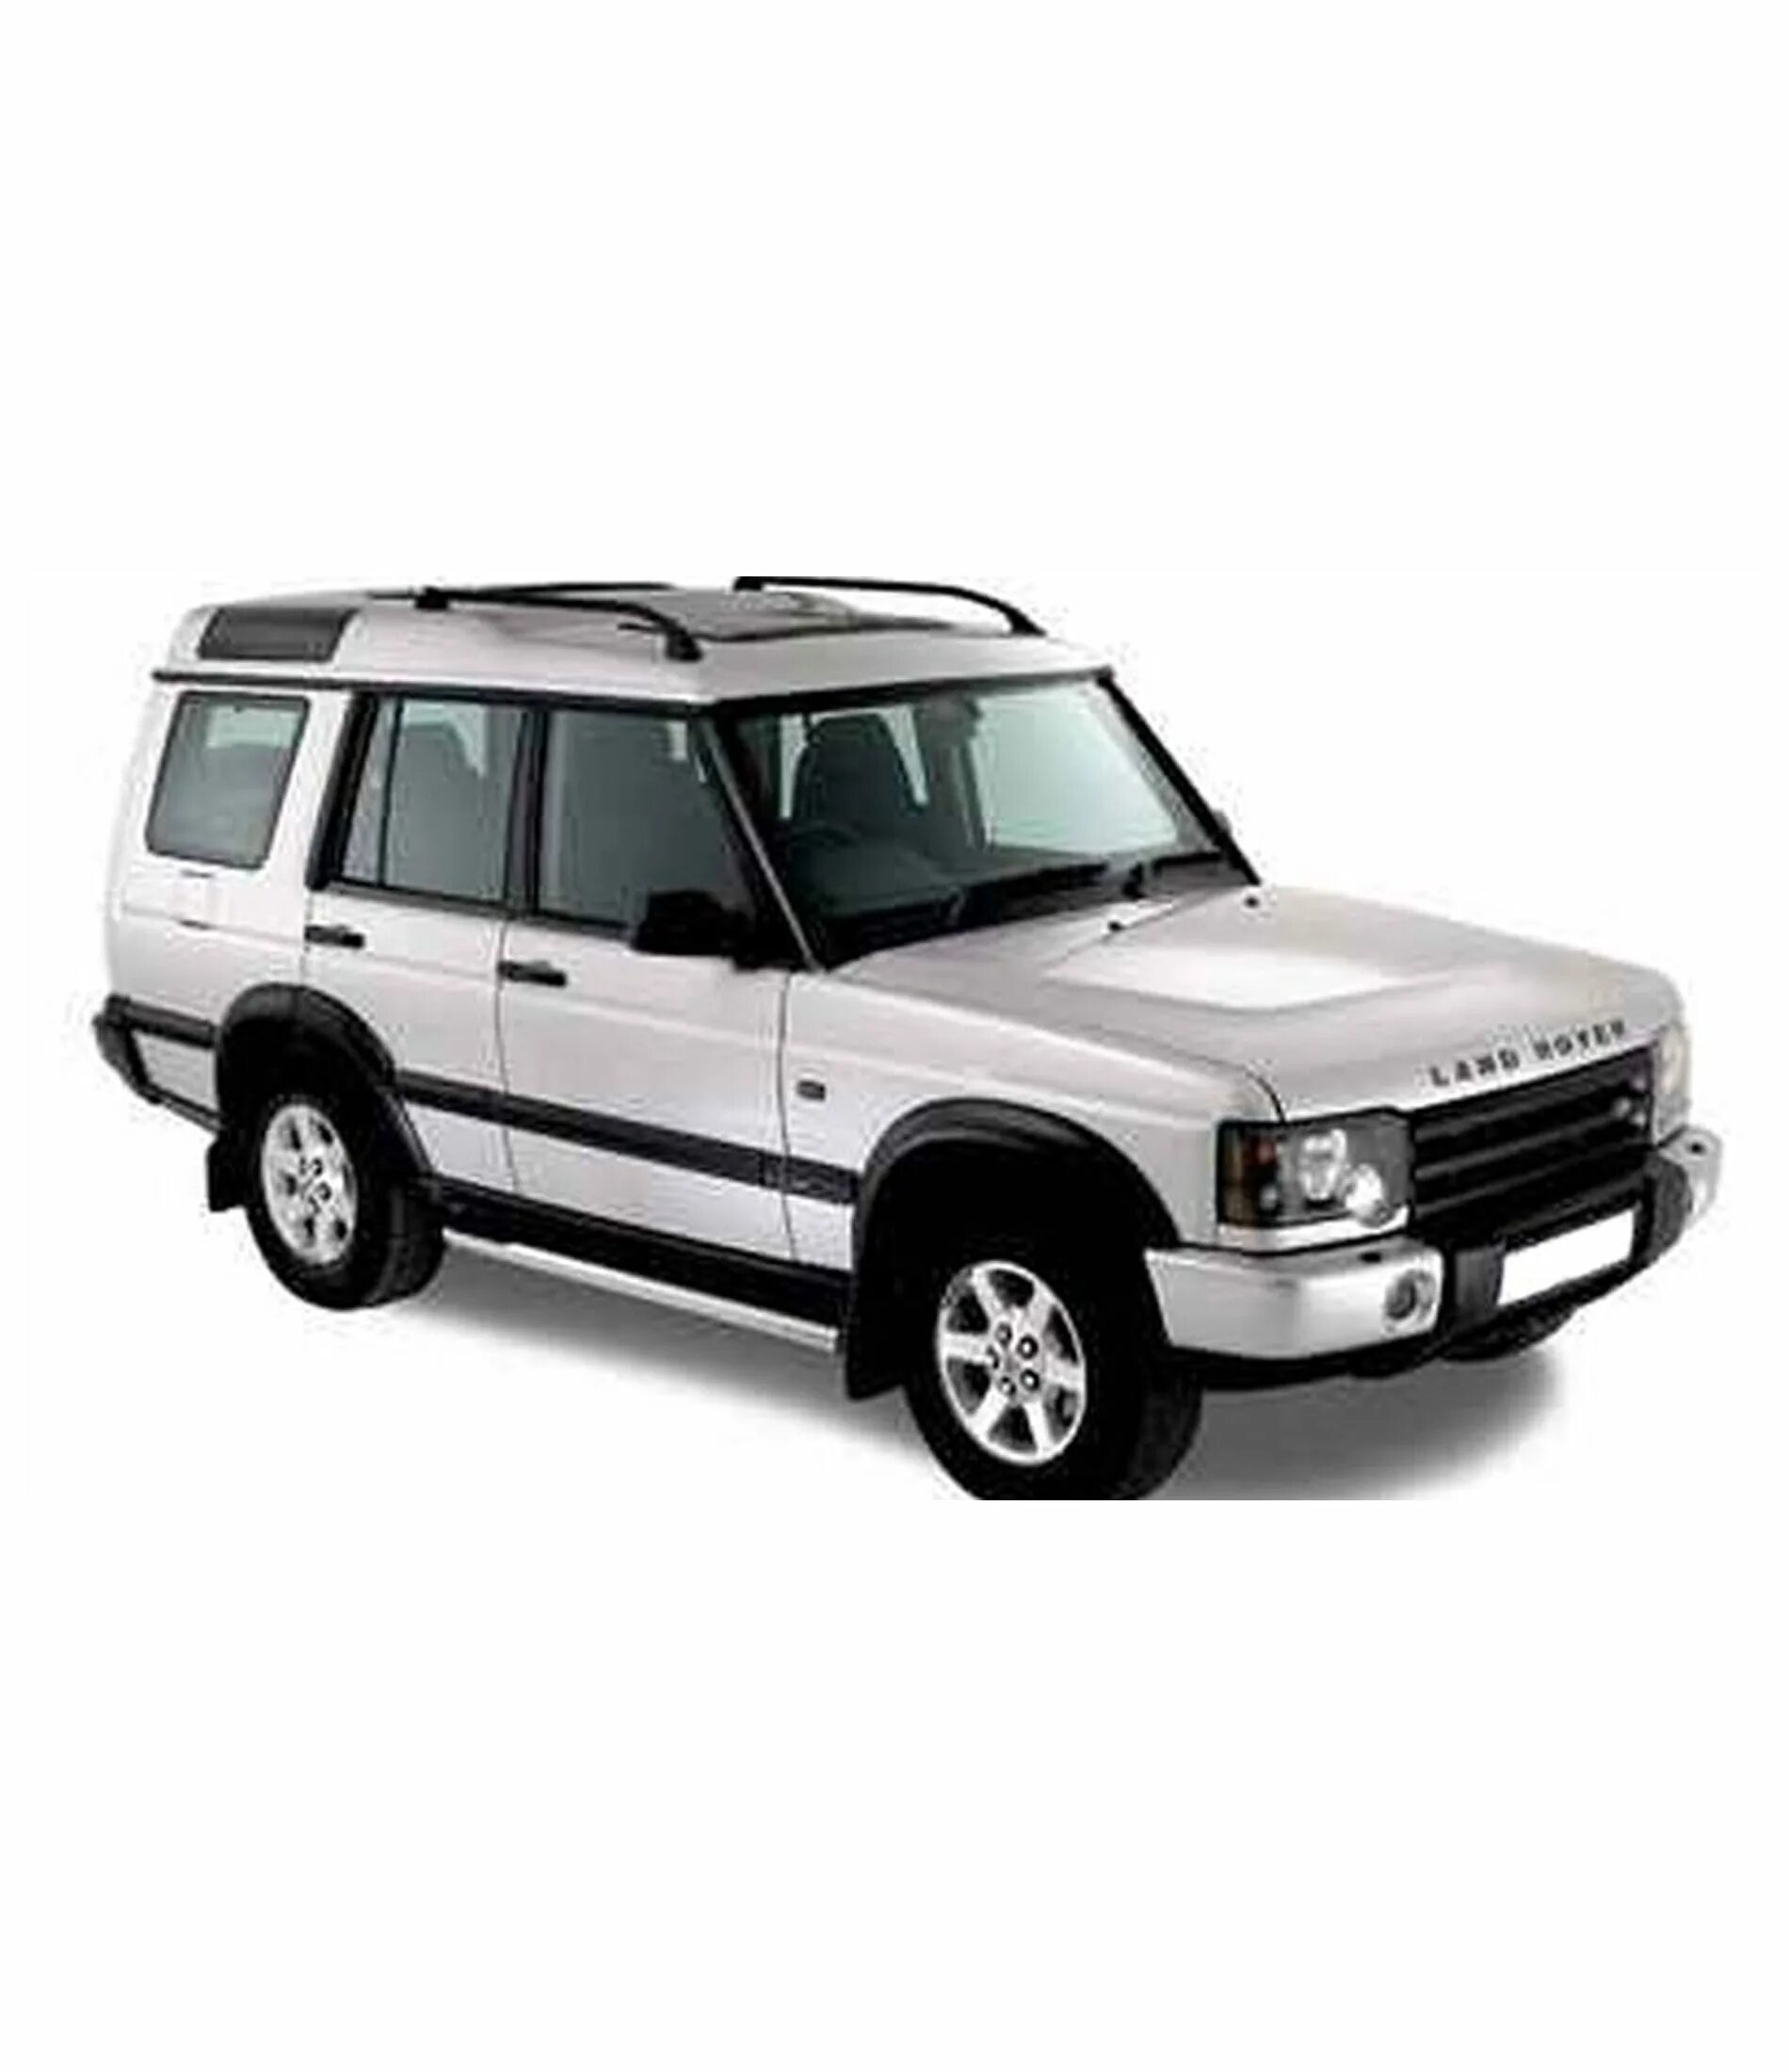 Land Rover Discovery II 1998-2004. Land Rover Discovery 1997. Land Rover Discovery 1998. Land Rover Discovery 2004. Тд дискавери